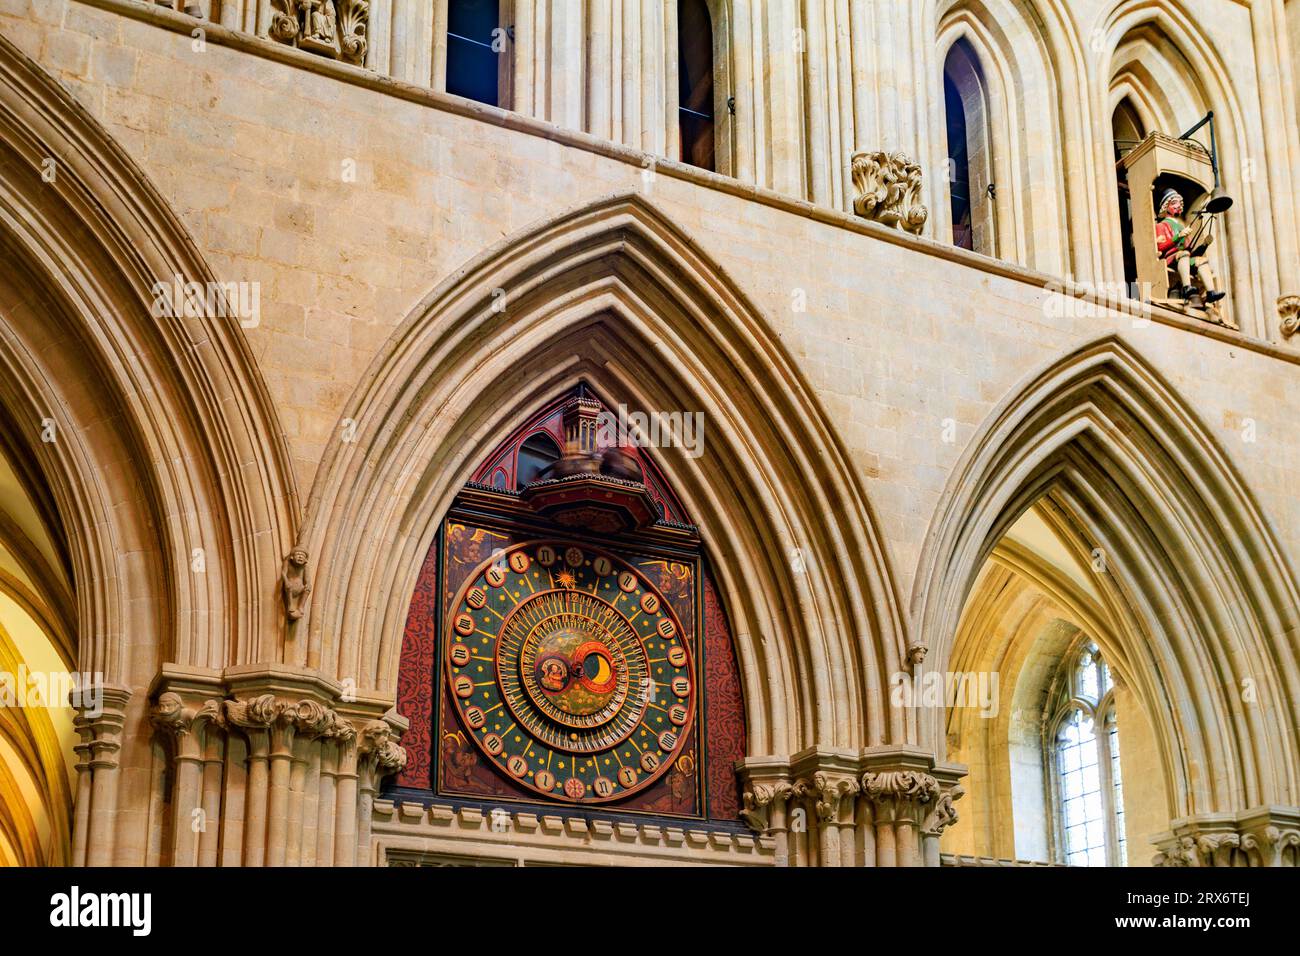 Die restaurierte historische astronomische Uhr aus dem 14. Jahrhundert zeigt die Bewegungen der Sonne und des Mondes in der Wells Cathedral, Somerset, England, Großbritannien Stockfoto